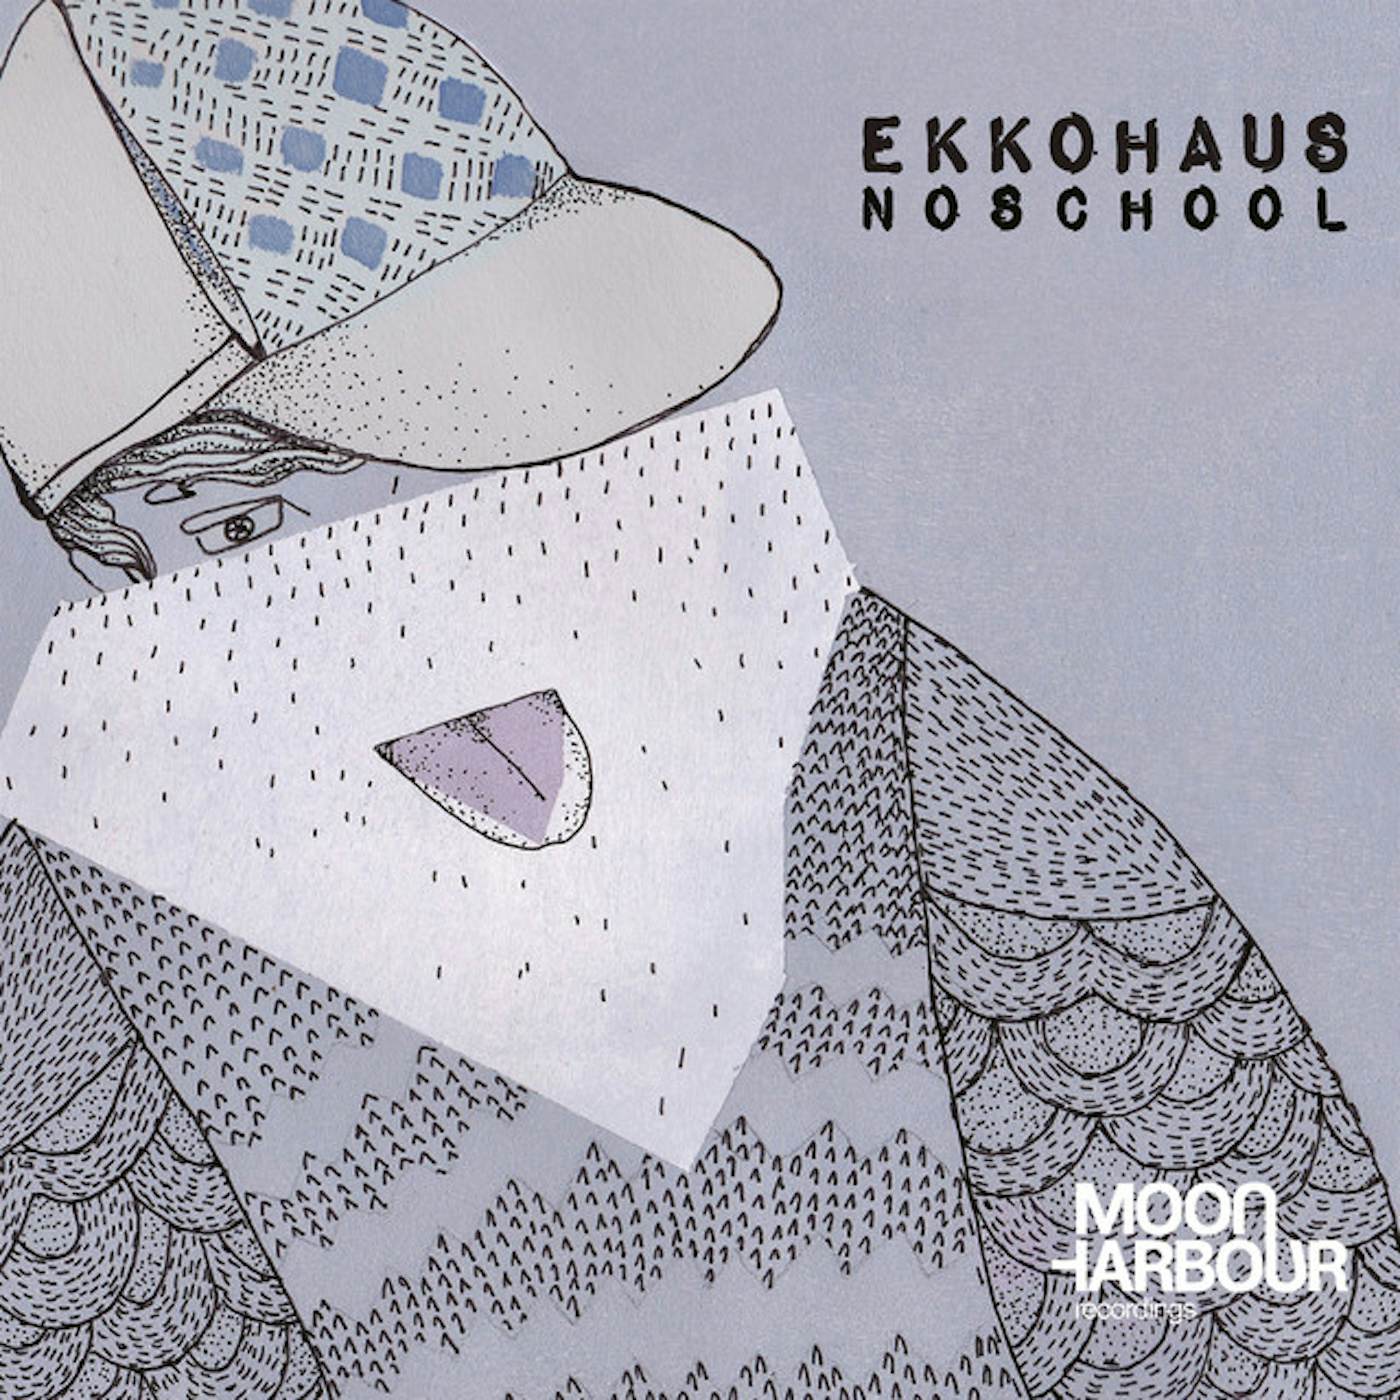 Ekkohaus Noschool Vinyl Record